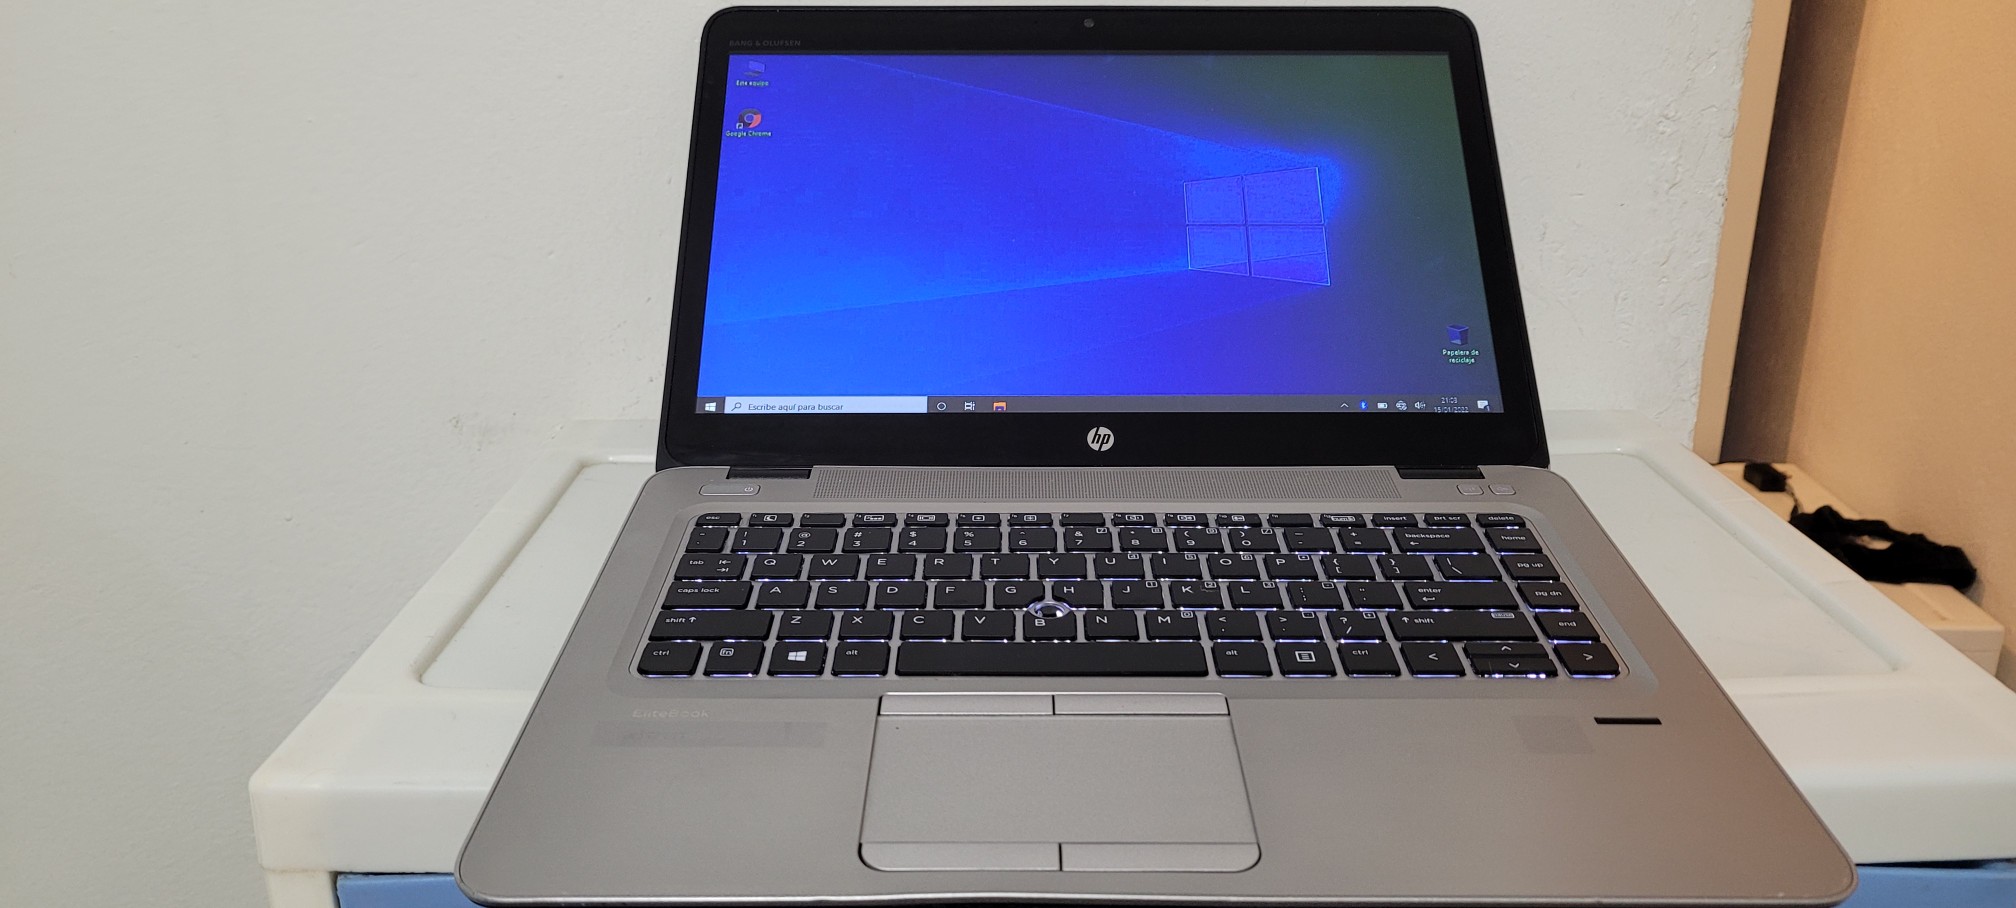 computadoras y laptops - Laptop hp G2 14 Pulg Core i5 6ta Gen Ram 8gb ddr4 trae dos Disco duros Wifi